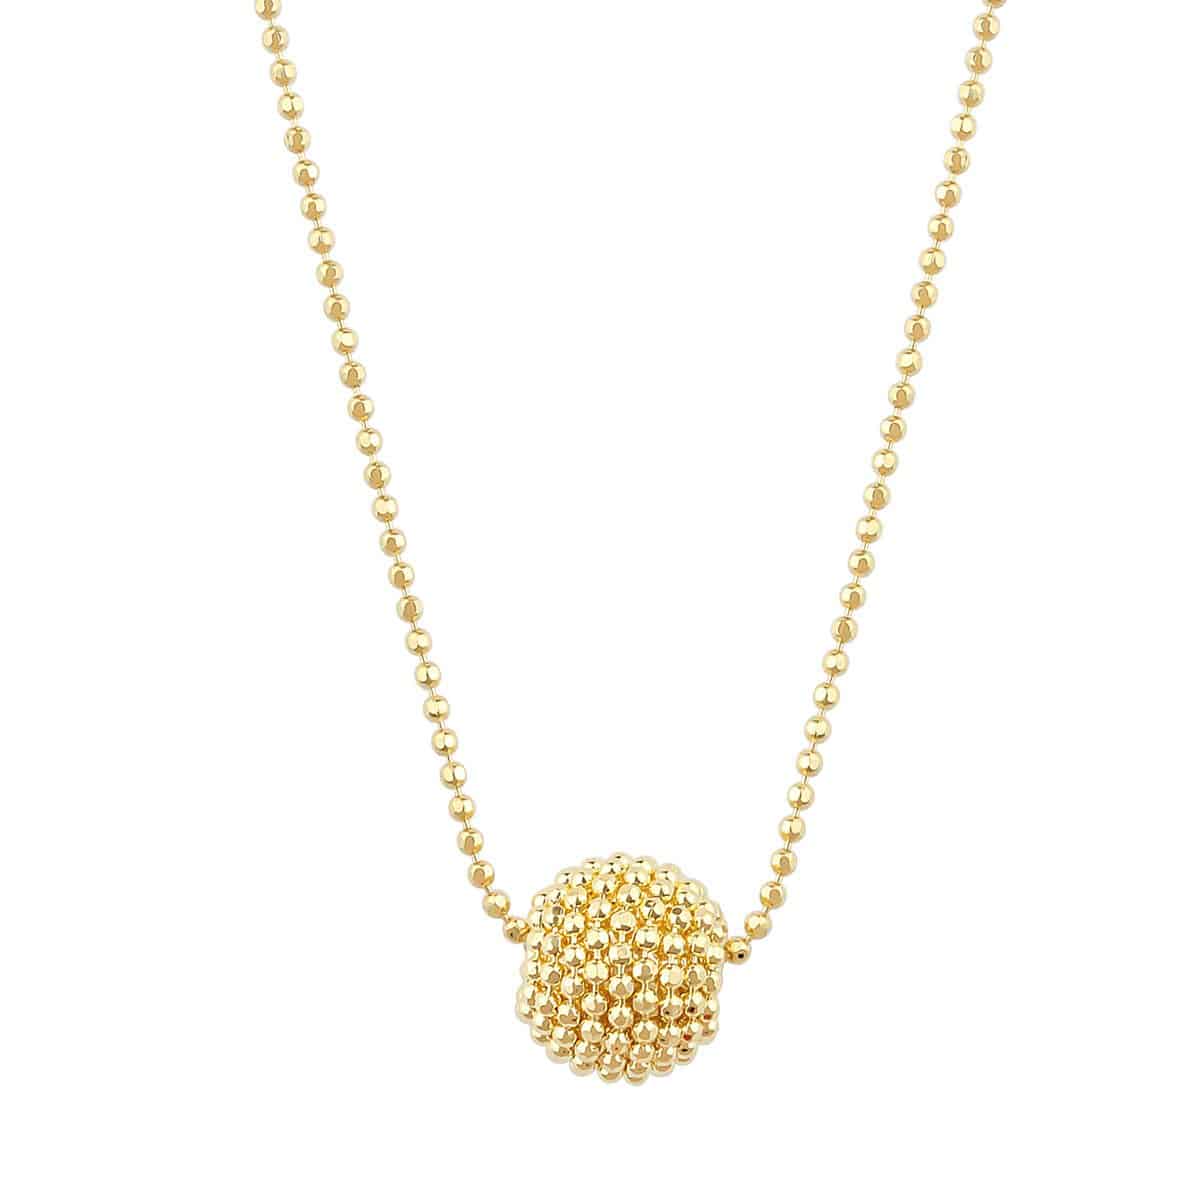 Auric Amelia 18ct Gold Pendant Necklace